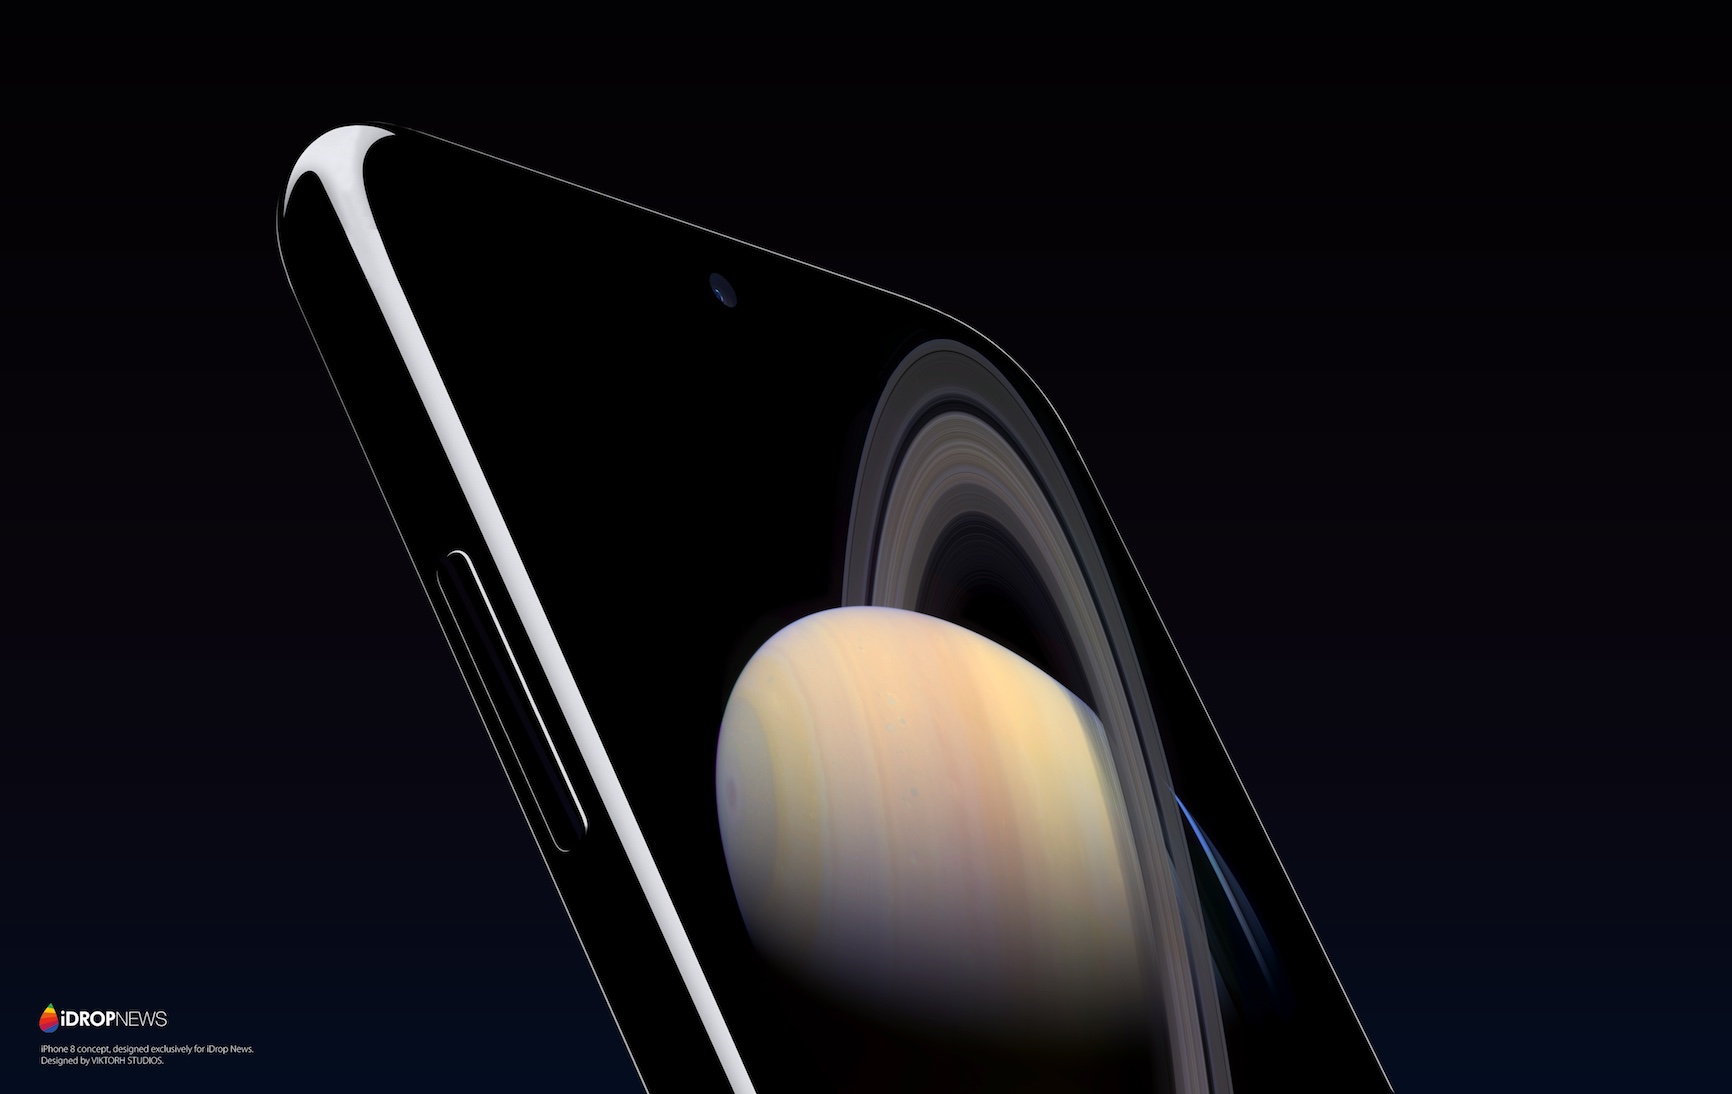 Nový koncept iPhonu 8 podívejte se na souhrn informací o chystaném